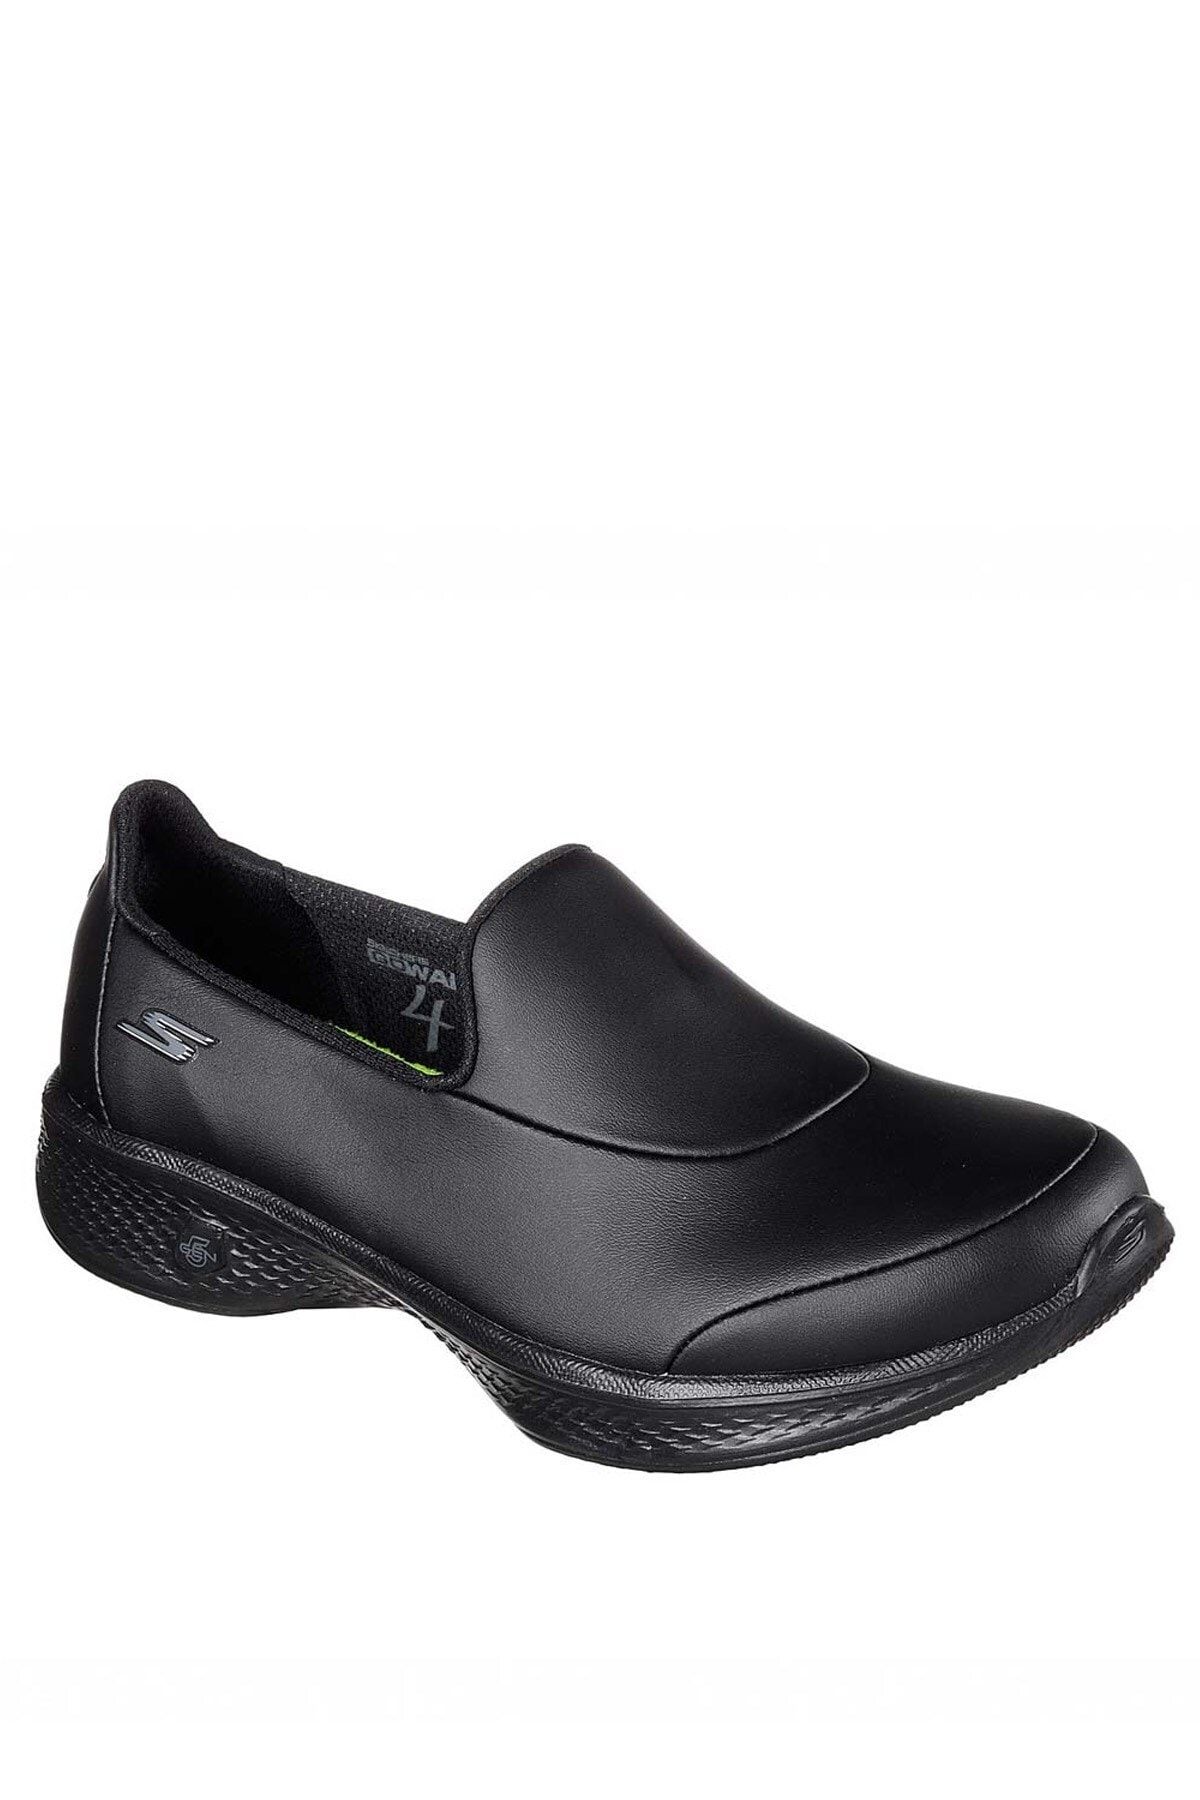 Skechers GO WALK 4 - ASCEND Kadın Siyah Yürüyüş Ayakkabısı - 14911 BBK